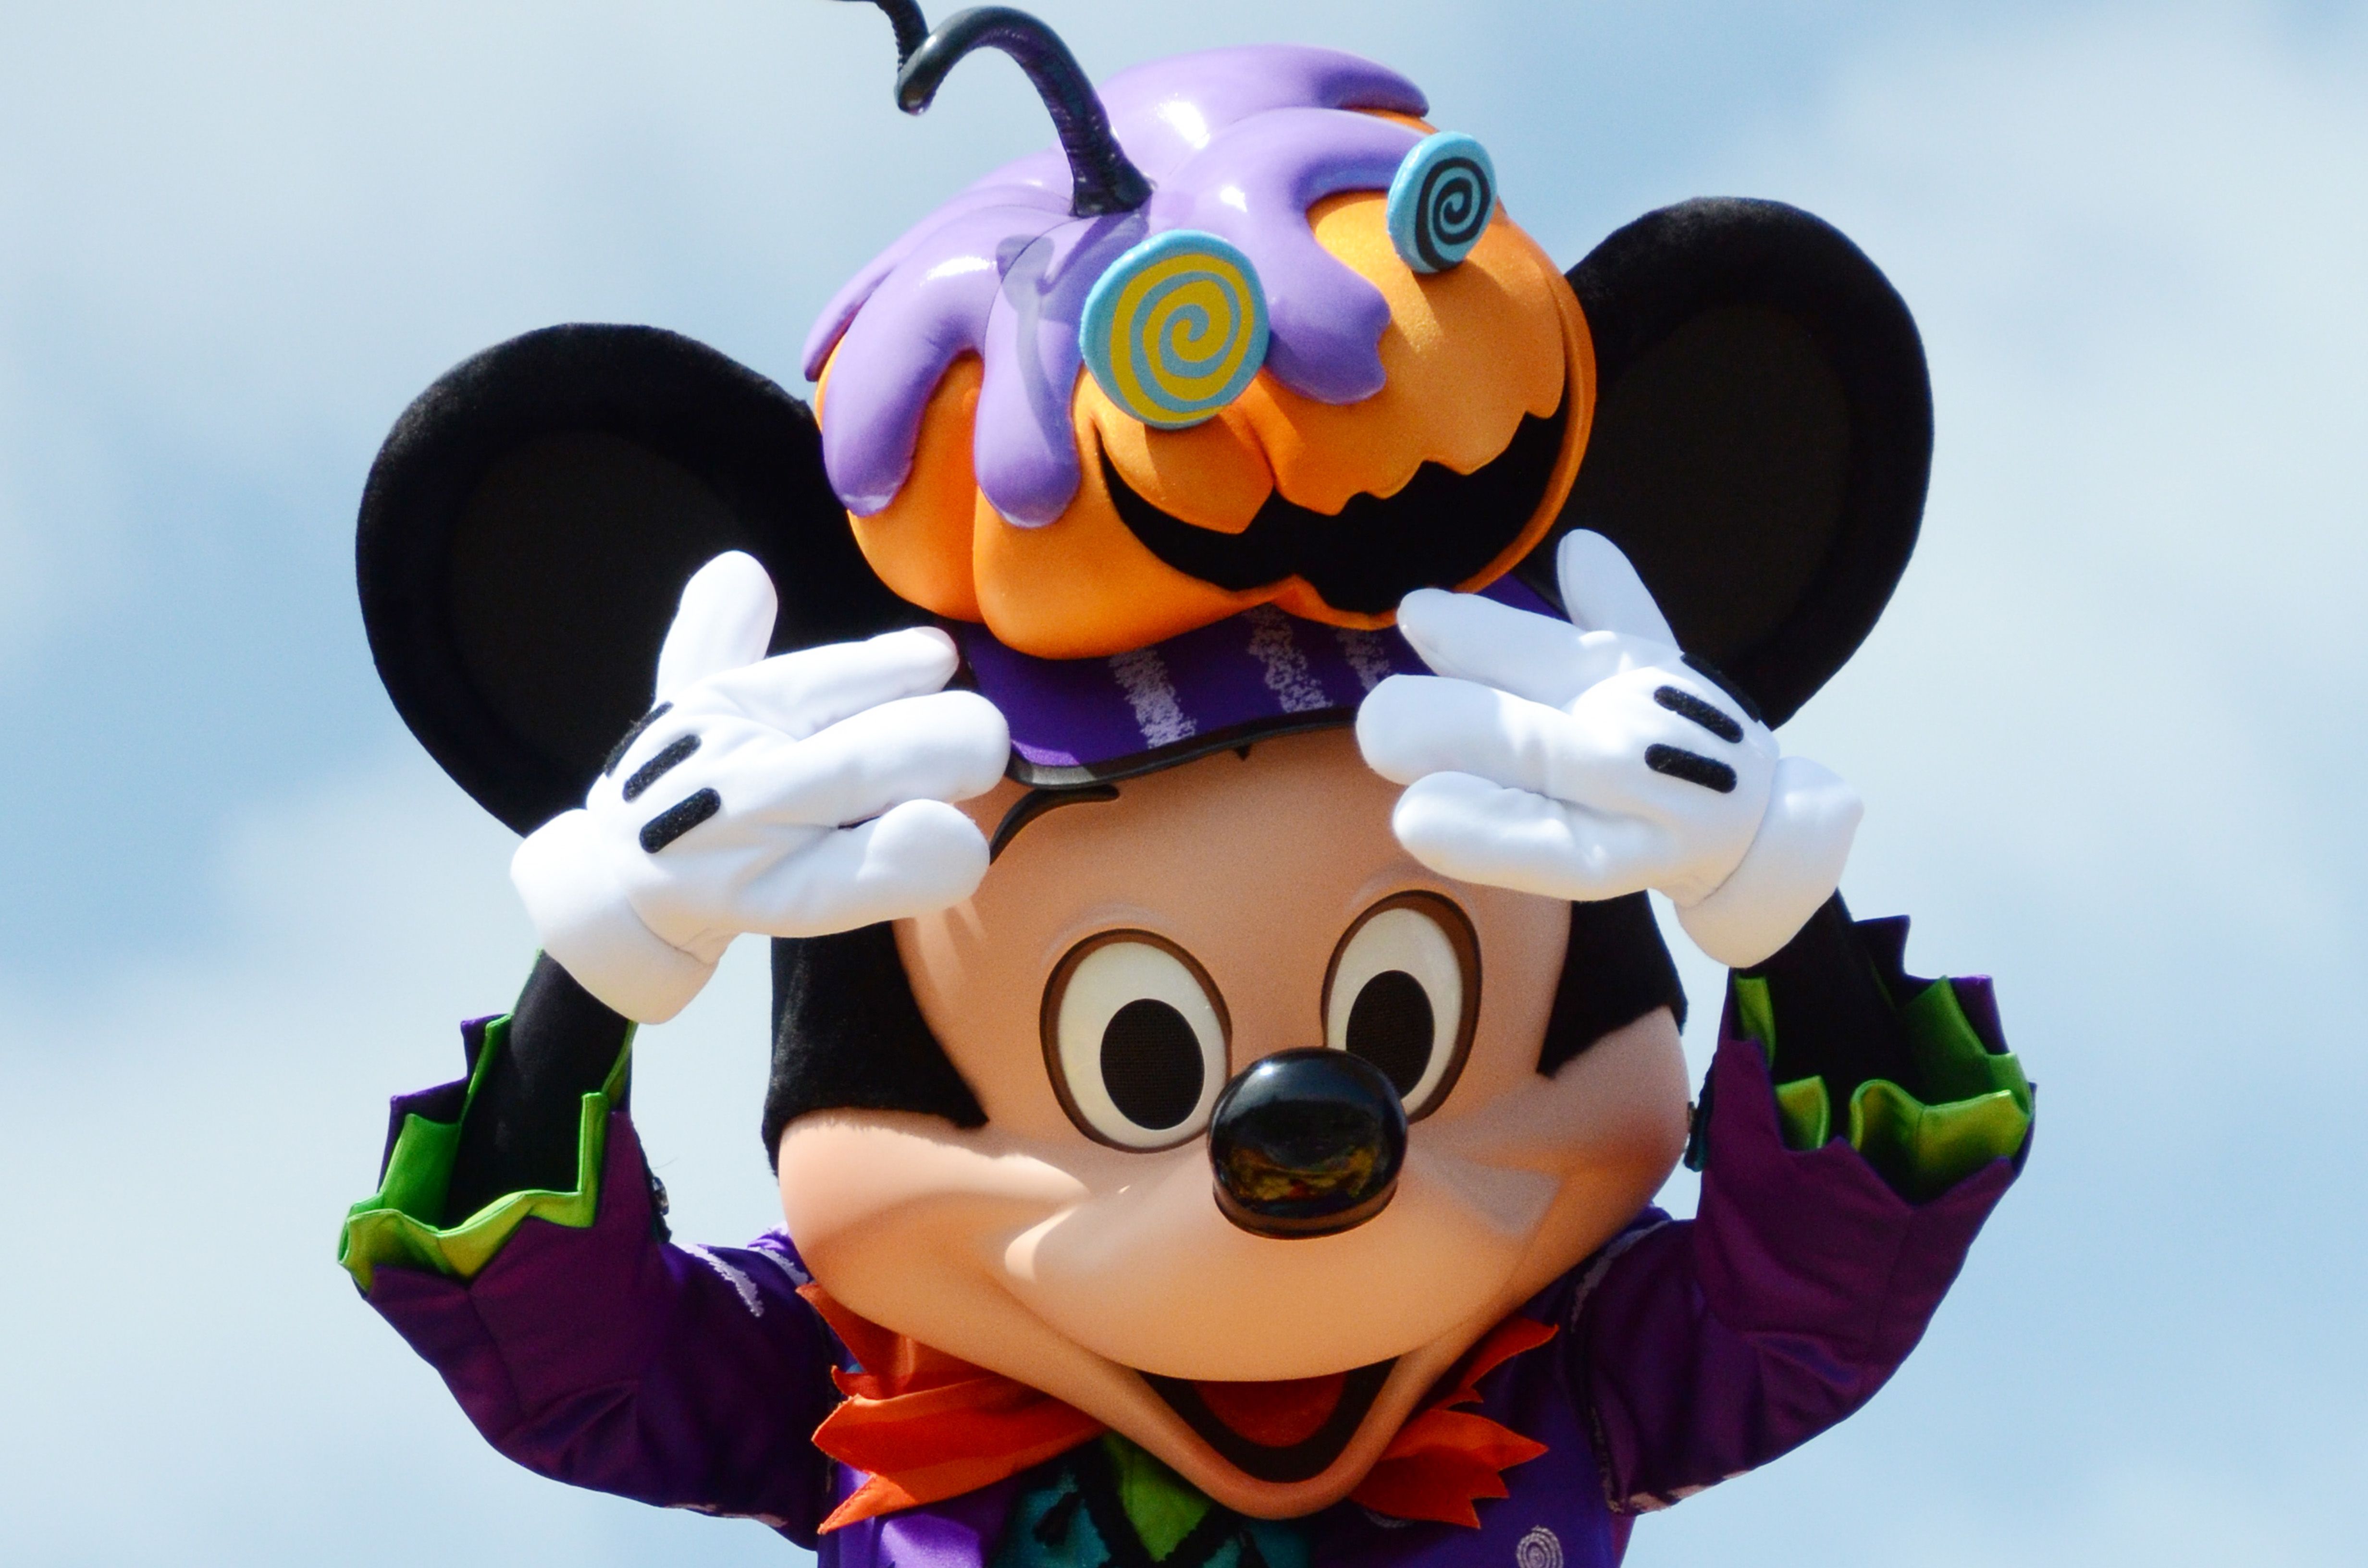 Happy Halloween Harvest Parade in Tokyo Disneyland